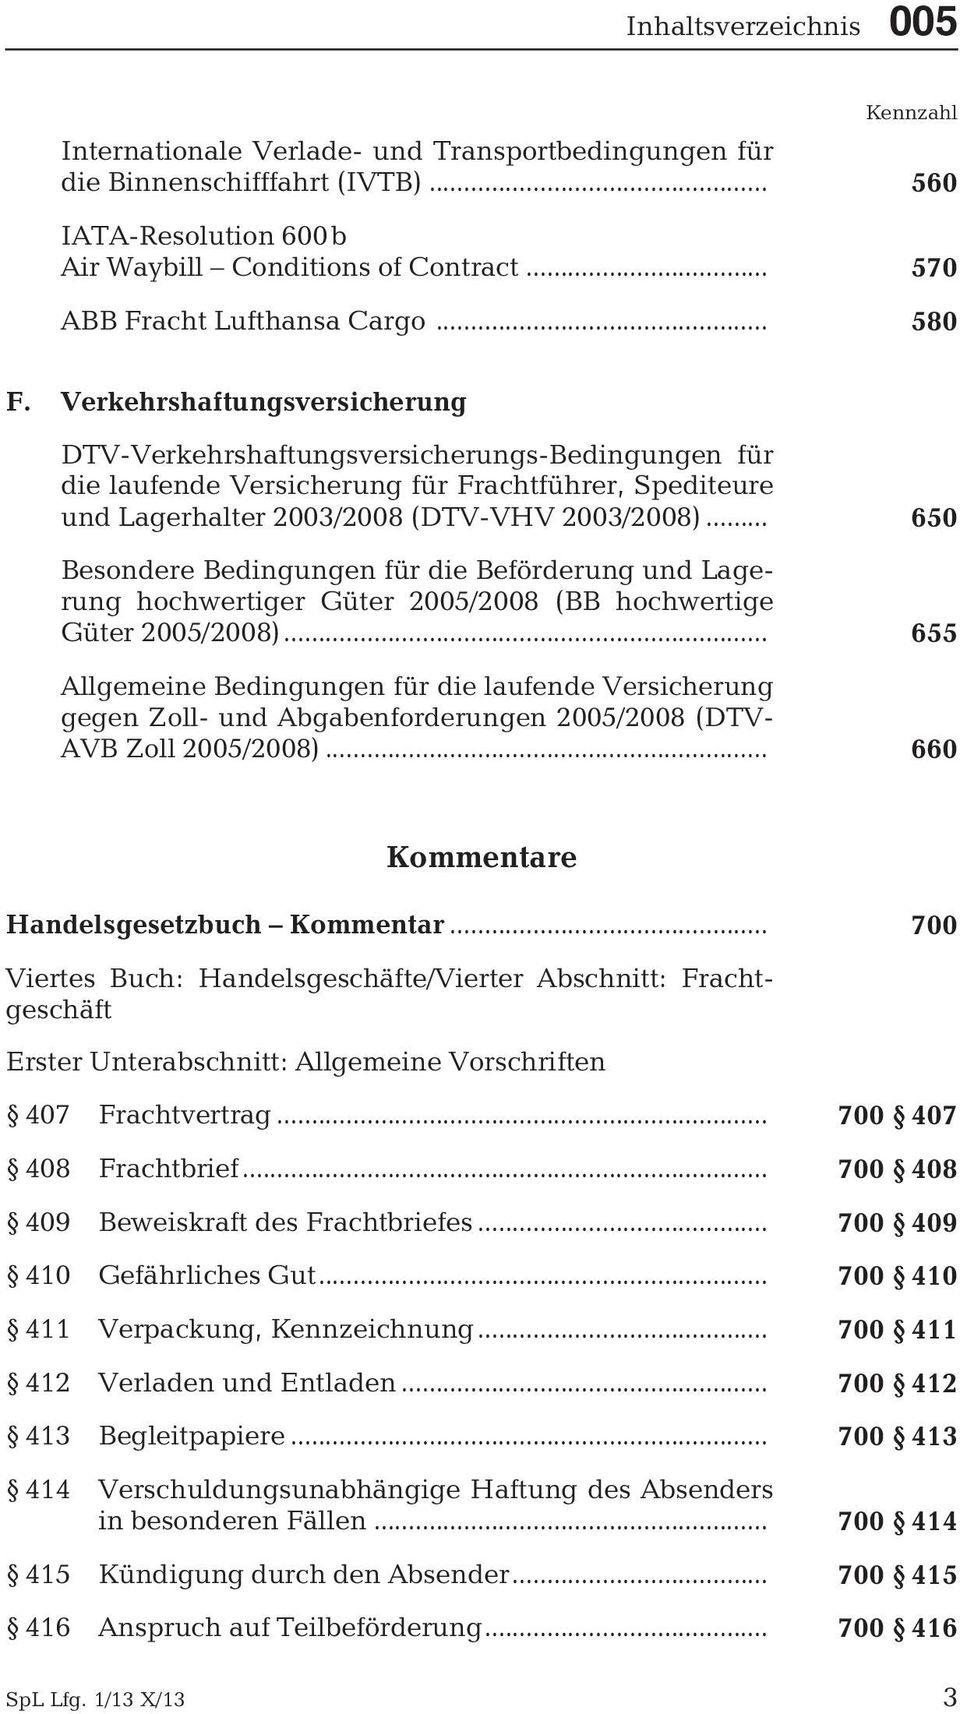 Verkehrshaftungsversicherung DTV-Verkehrshaftungsversicherungs-Bedingungen für die laufende Versicherung für Frachtführer, Spediteure und Lagerhalter 2003/2008 (DTV-VHV 2003/2008).